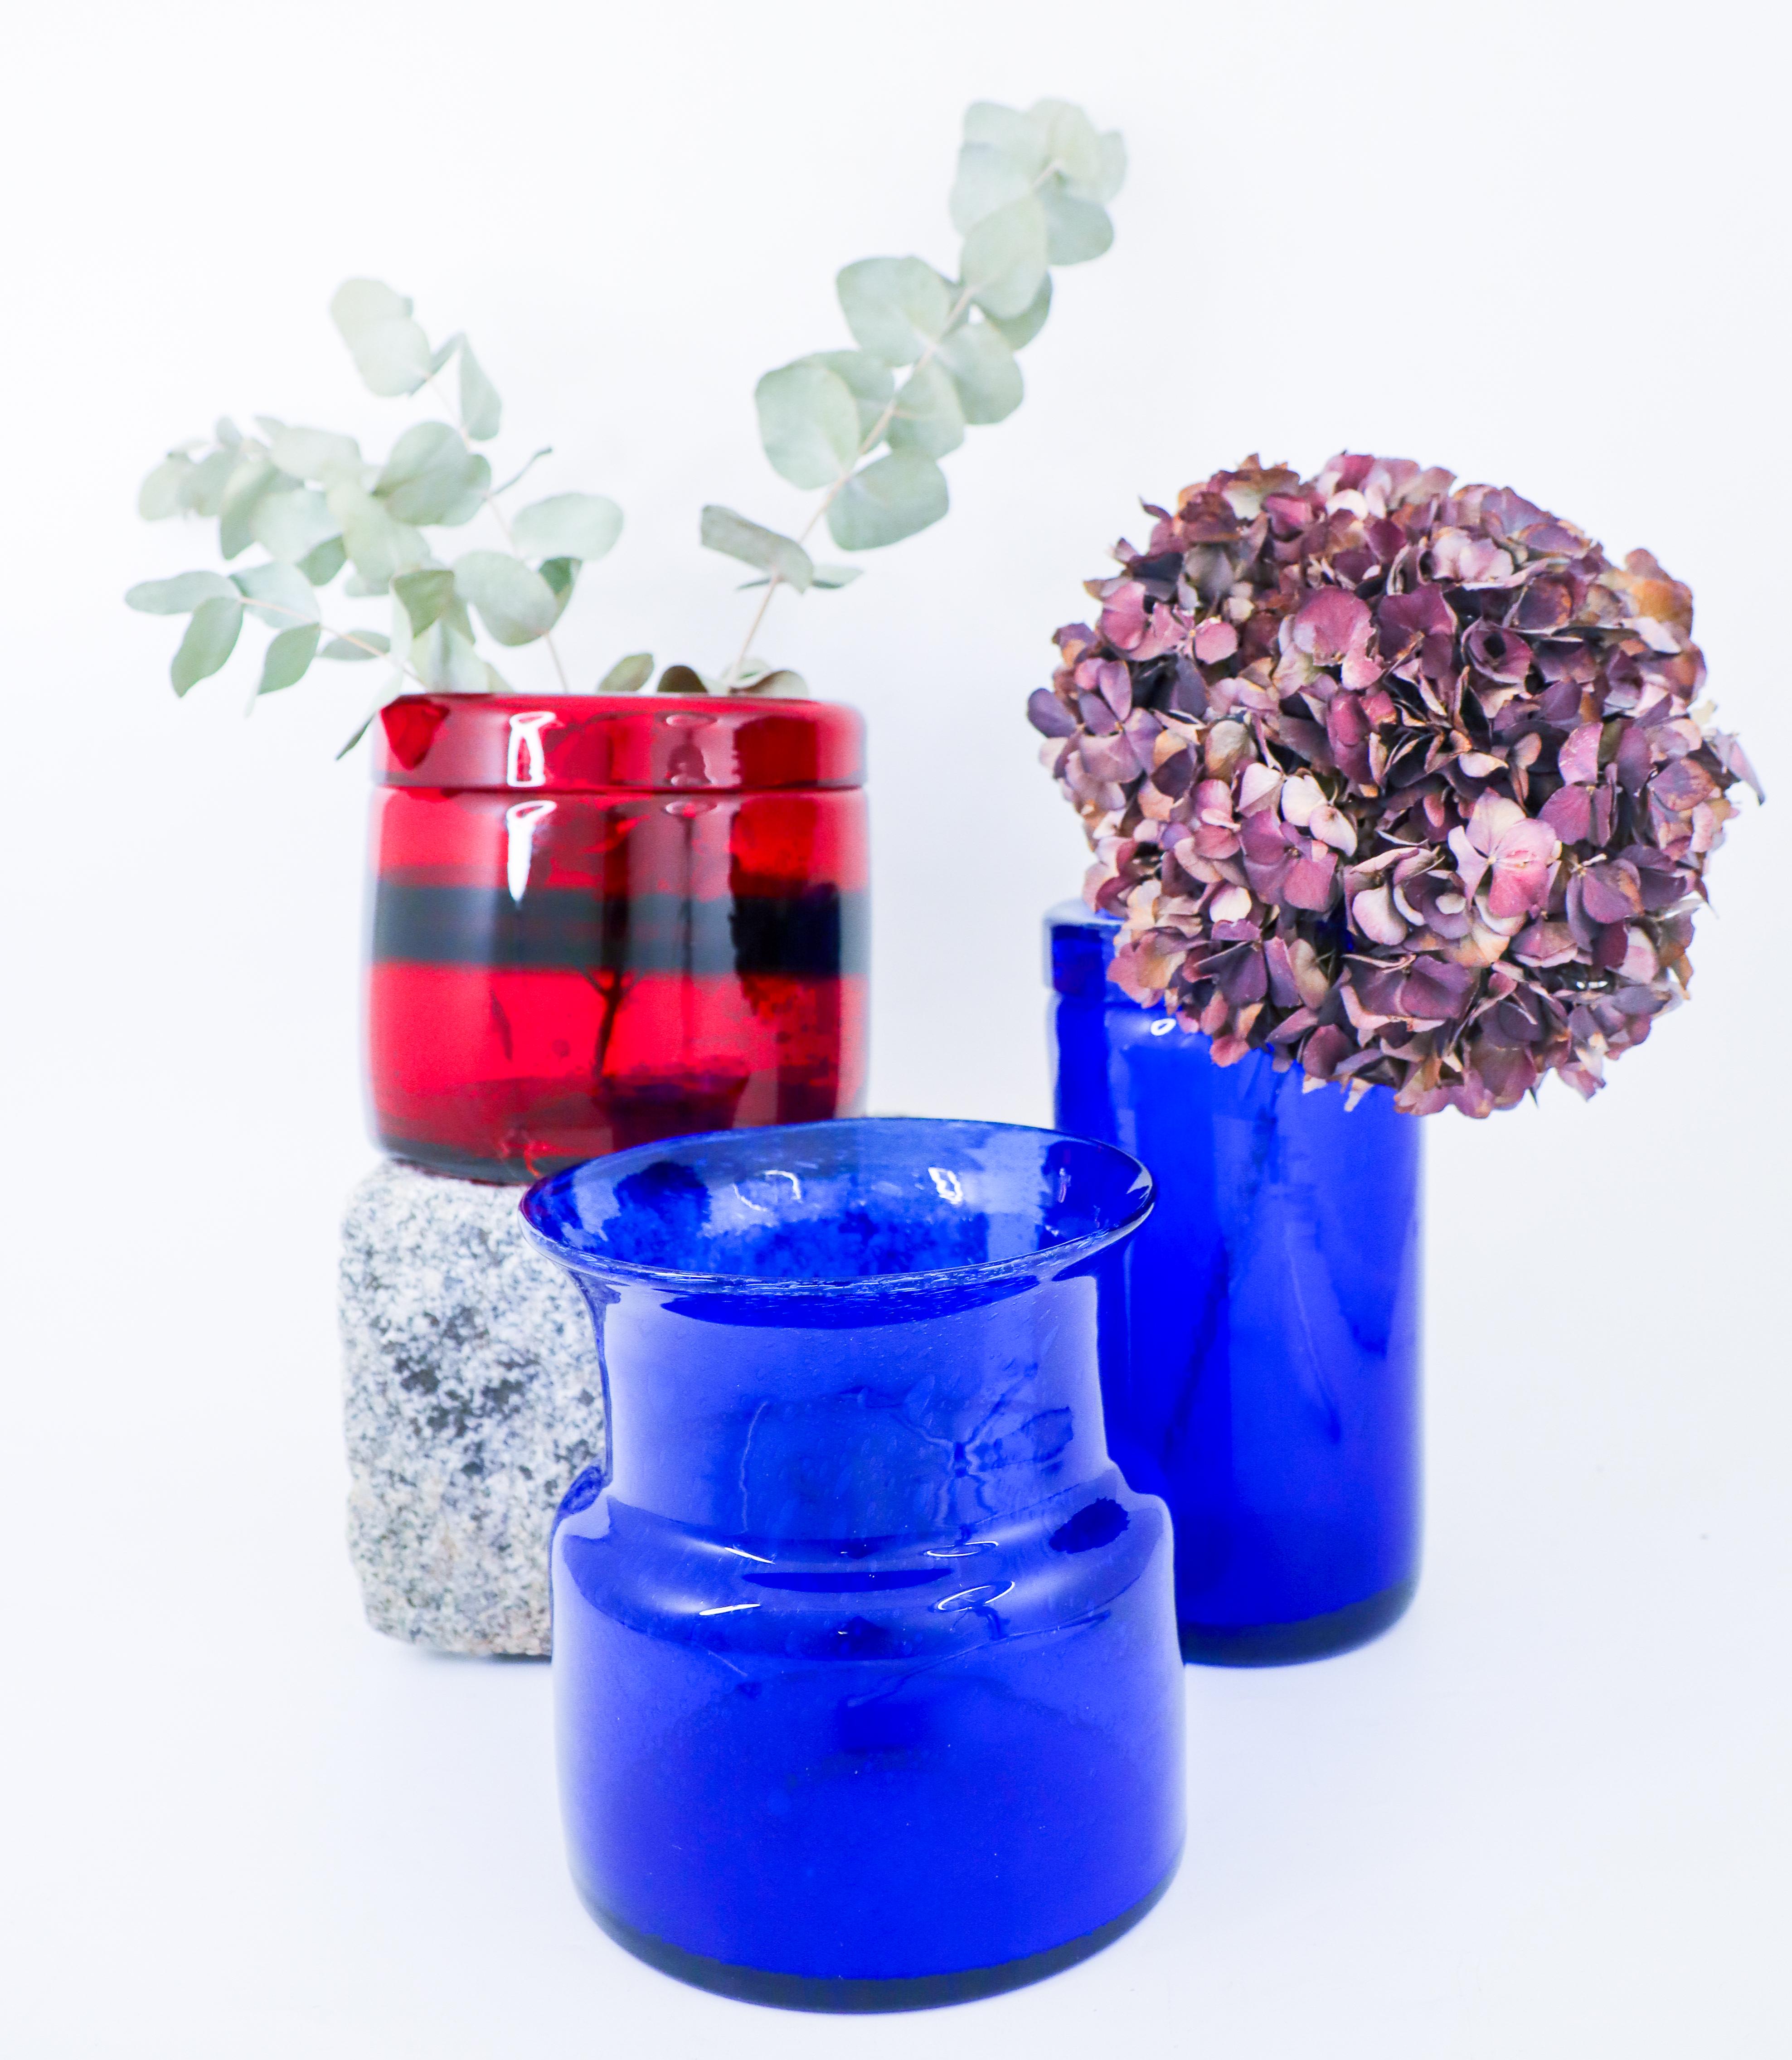 Drei Glasvasen, entworfen von Erik Höglund bei Boda, Schweden. Die rote Vase ist 13,5 cm hoch und hat einen Durchmesser von 15 cm, die höchste blaue Vase ist 21,5 cm hoch und hat einen Durchmesser von 11 cm, die andere blaue Vase ist 16,5 cm hoch